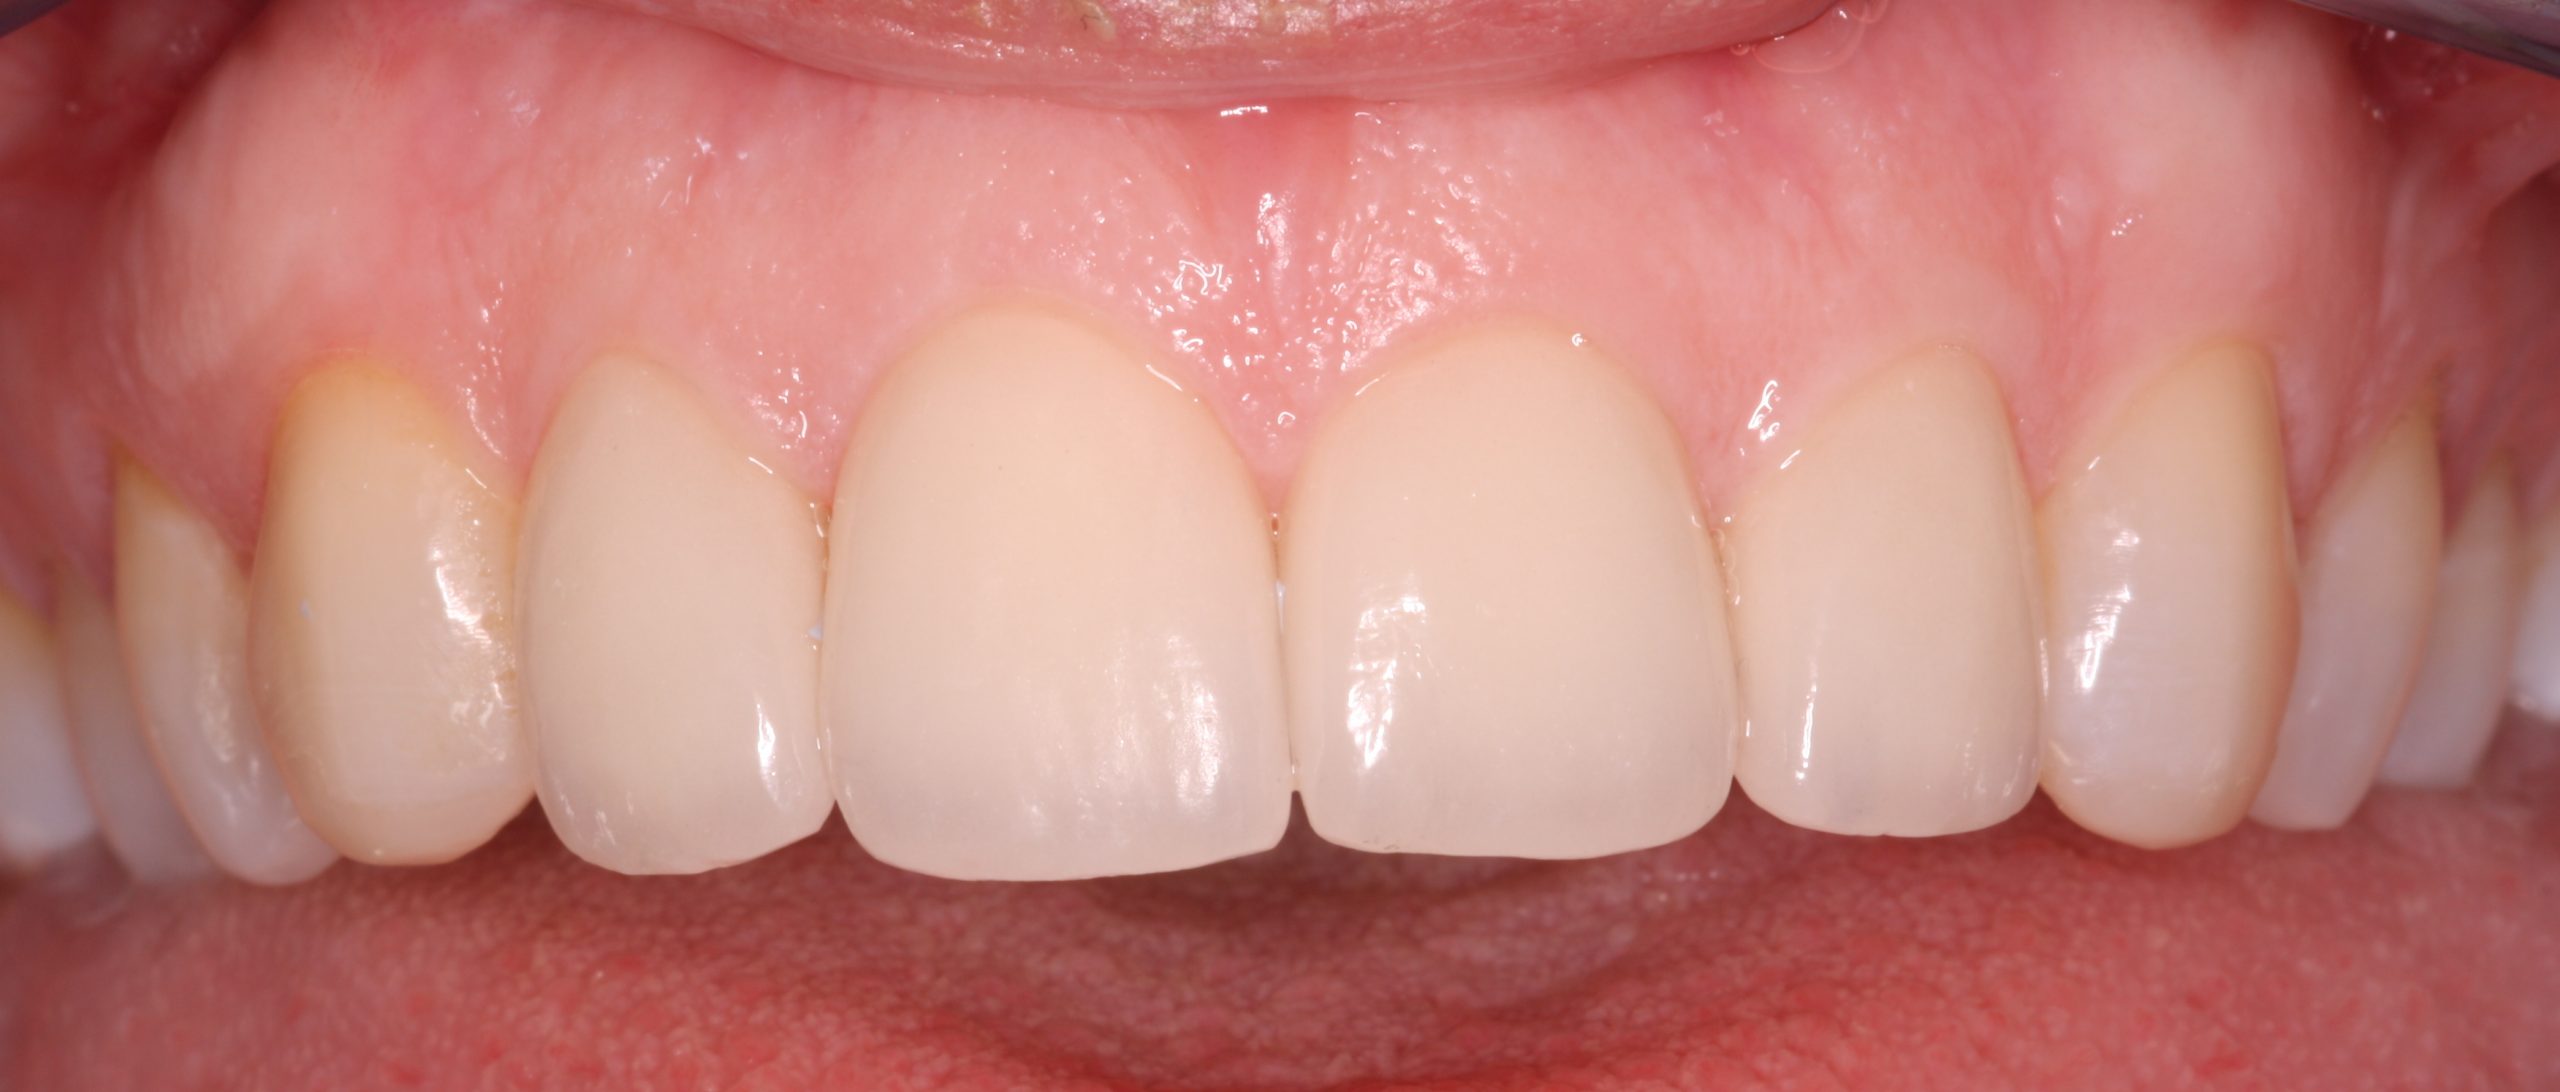 veneers - After picture of a patient after undergoing veneers treatment N2N1_beechwood dental_best dentist dublin